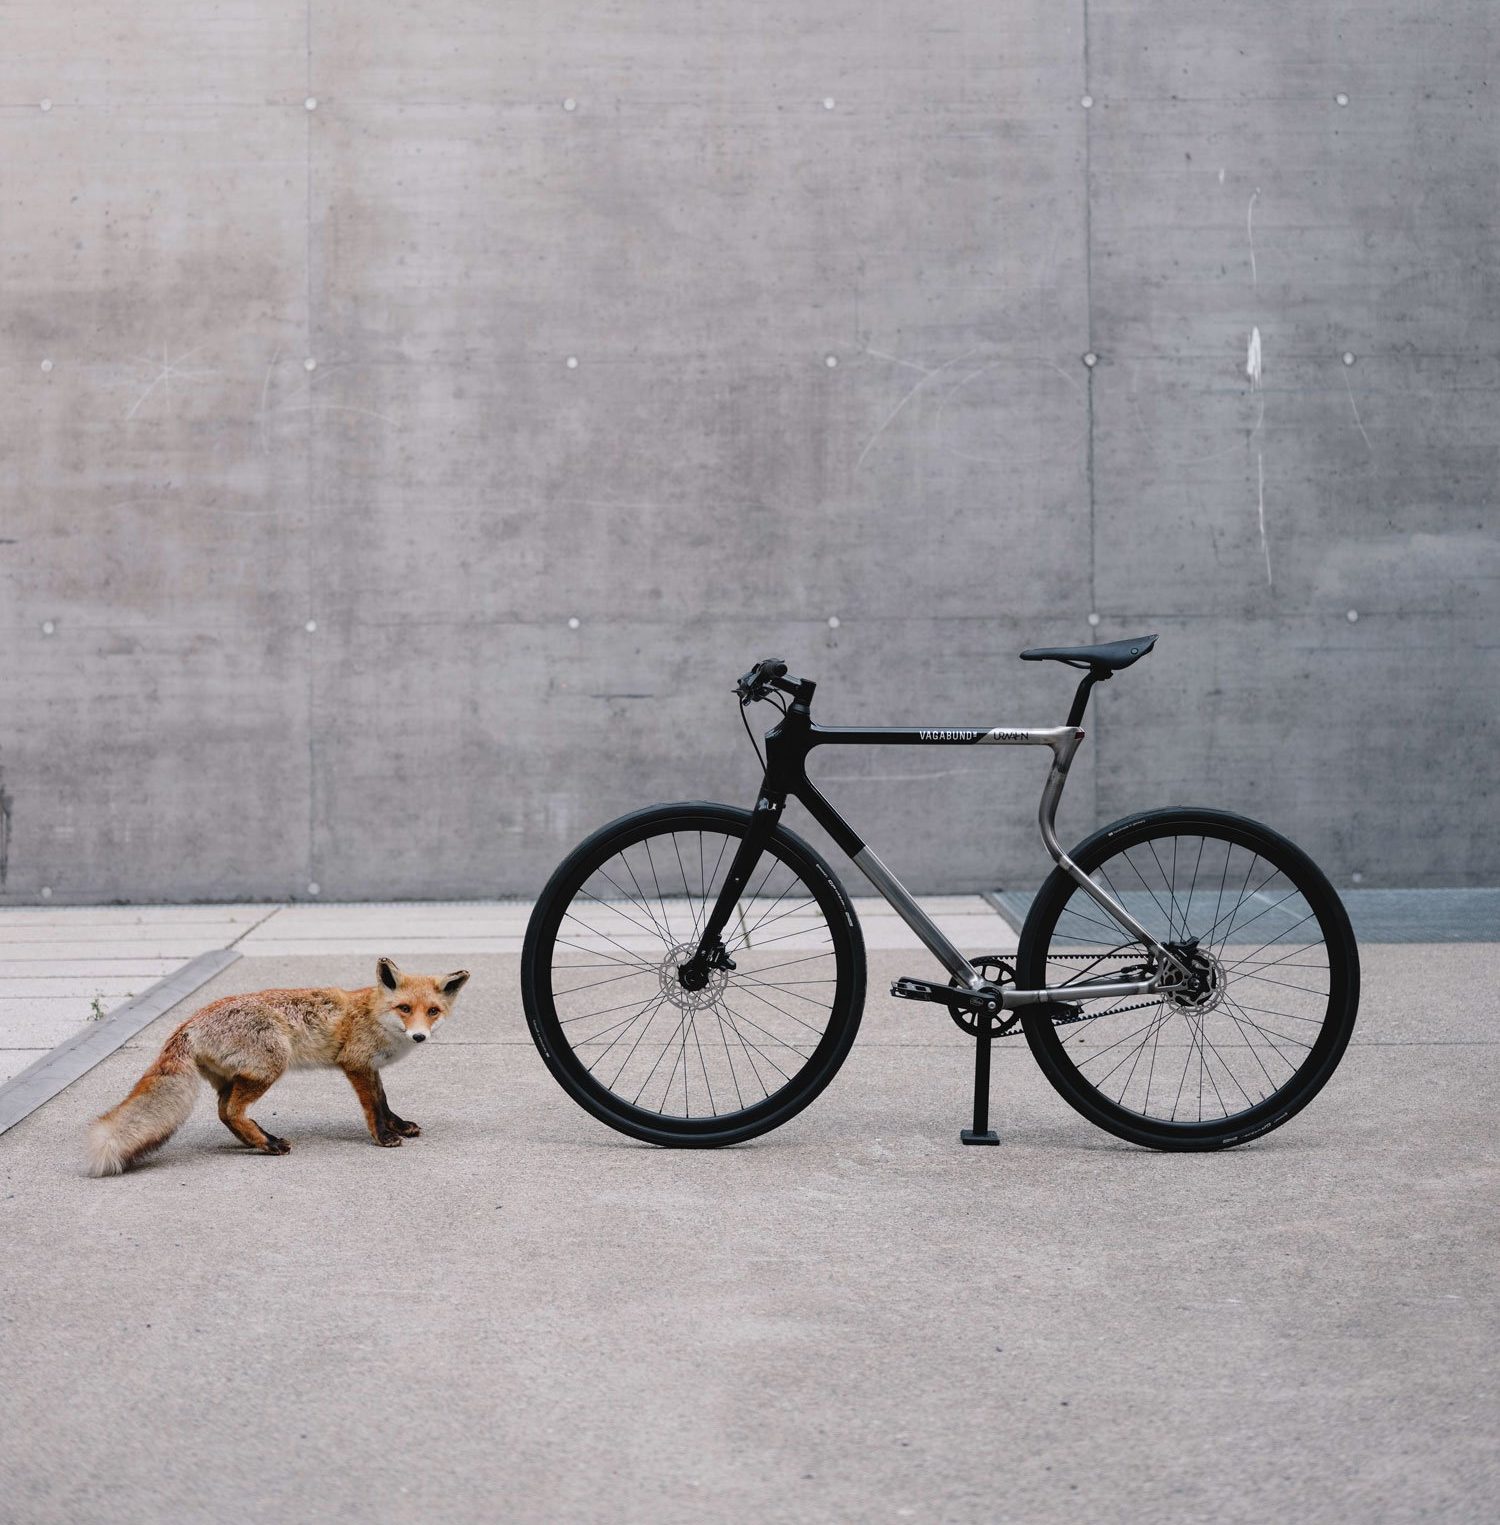 The Urwahn x Vagabund 3D printed bike next to its inspiration - the fox. Photo via Urwahn/Vagabund Moto.